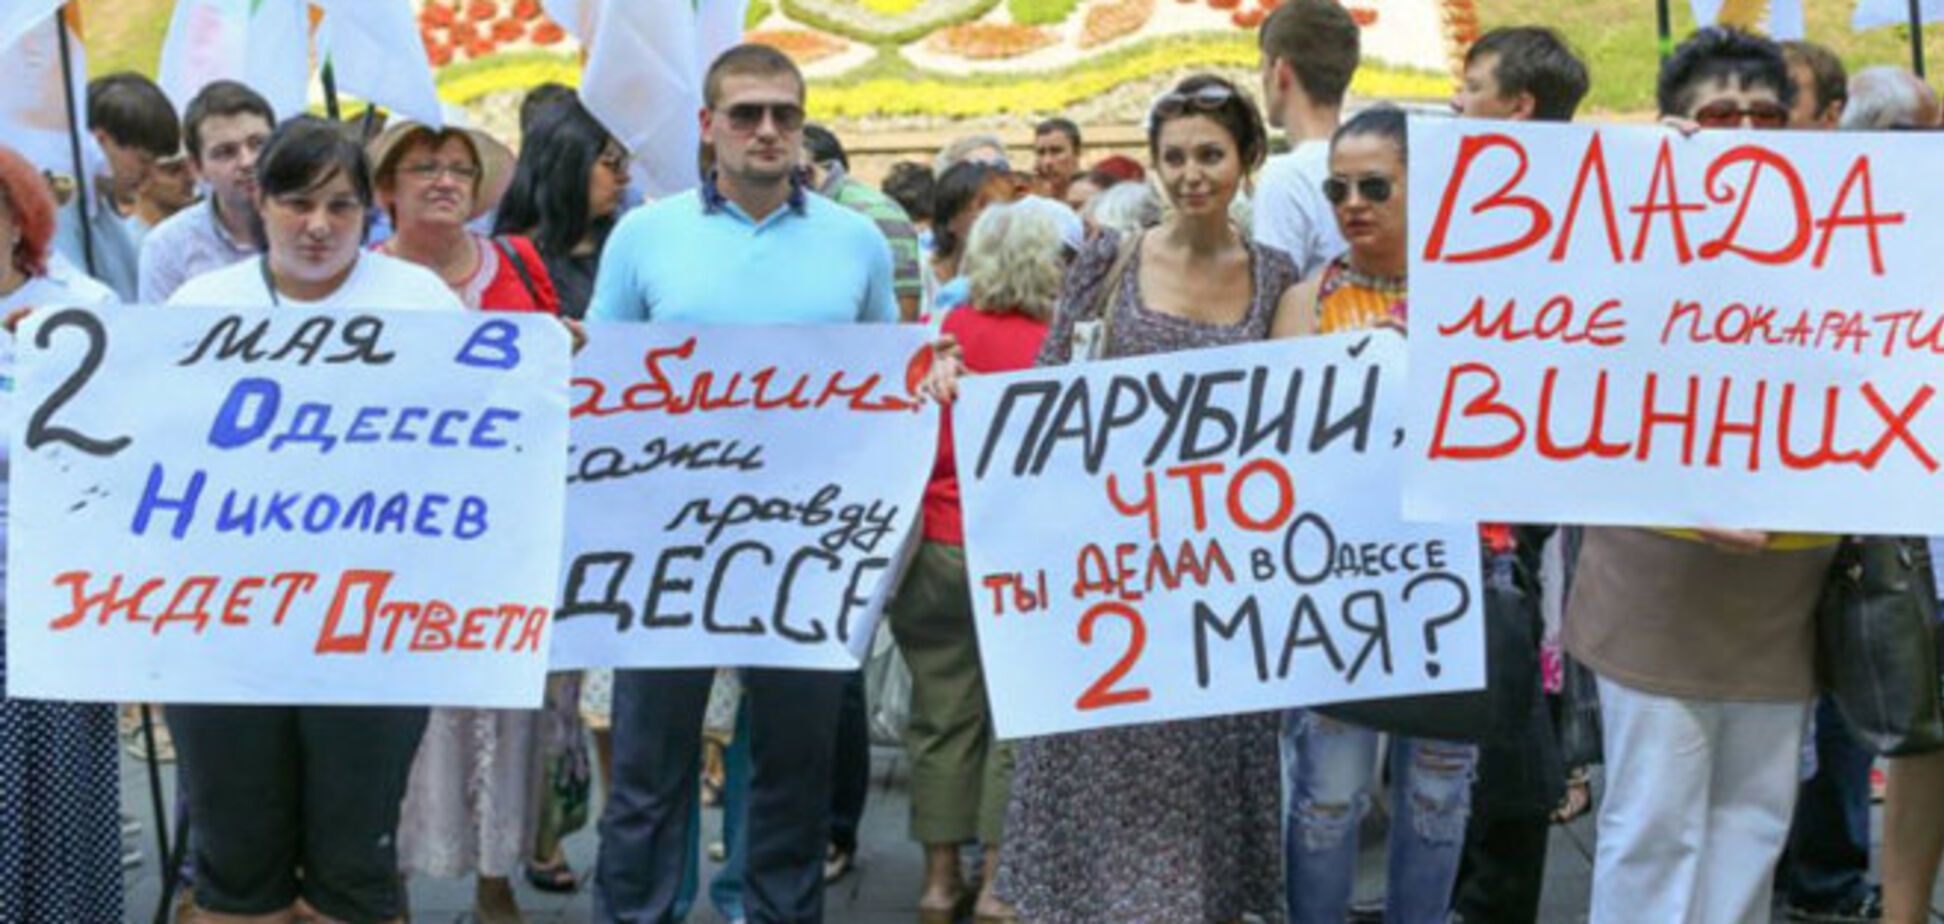 Партия развития провела митинг-реквием с требованием расследования гибели людей 2 мая в Одессе 